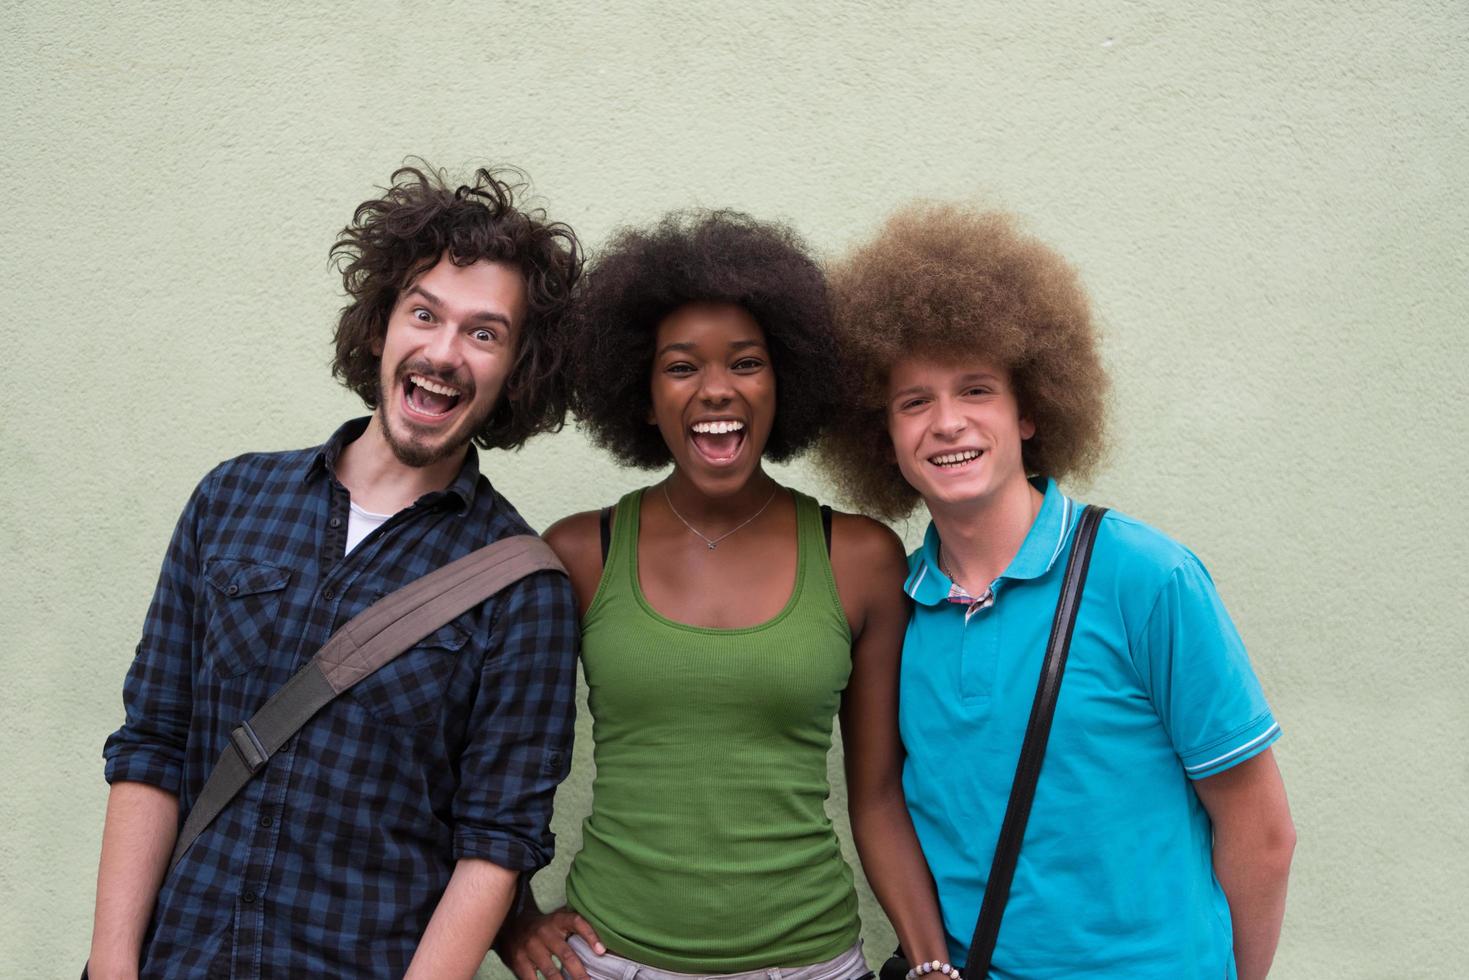 groupe multiethnique de trois amis heureux photo